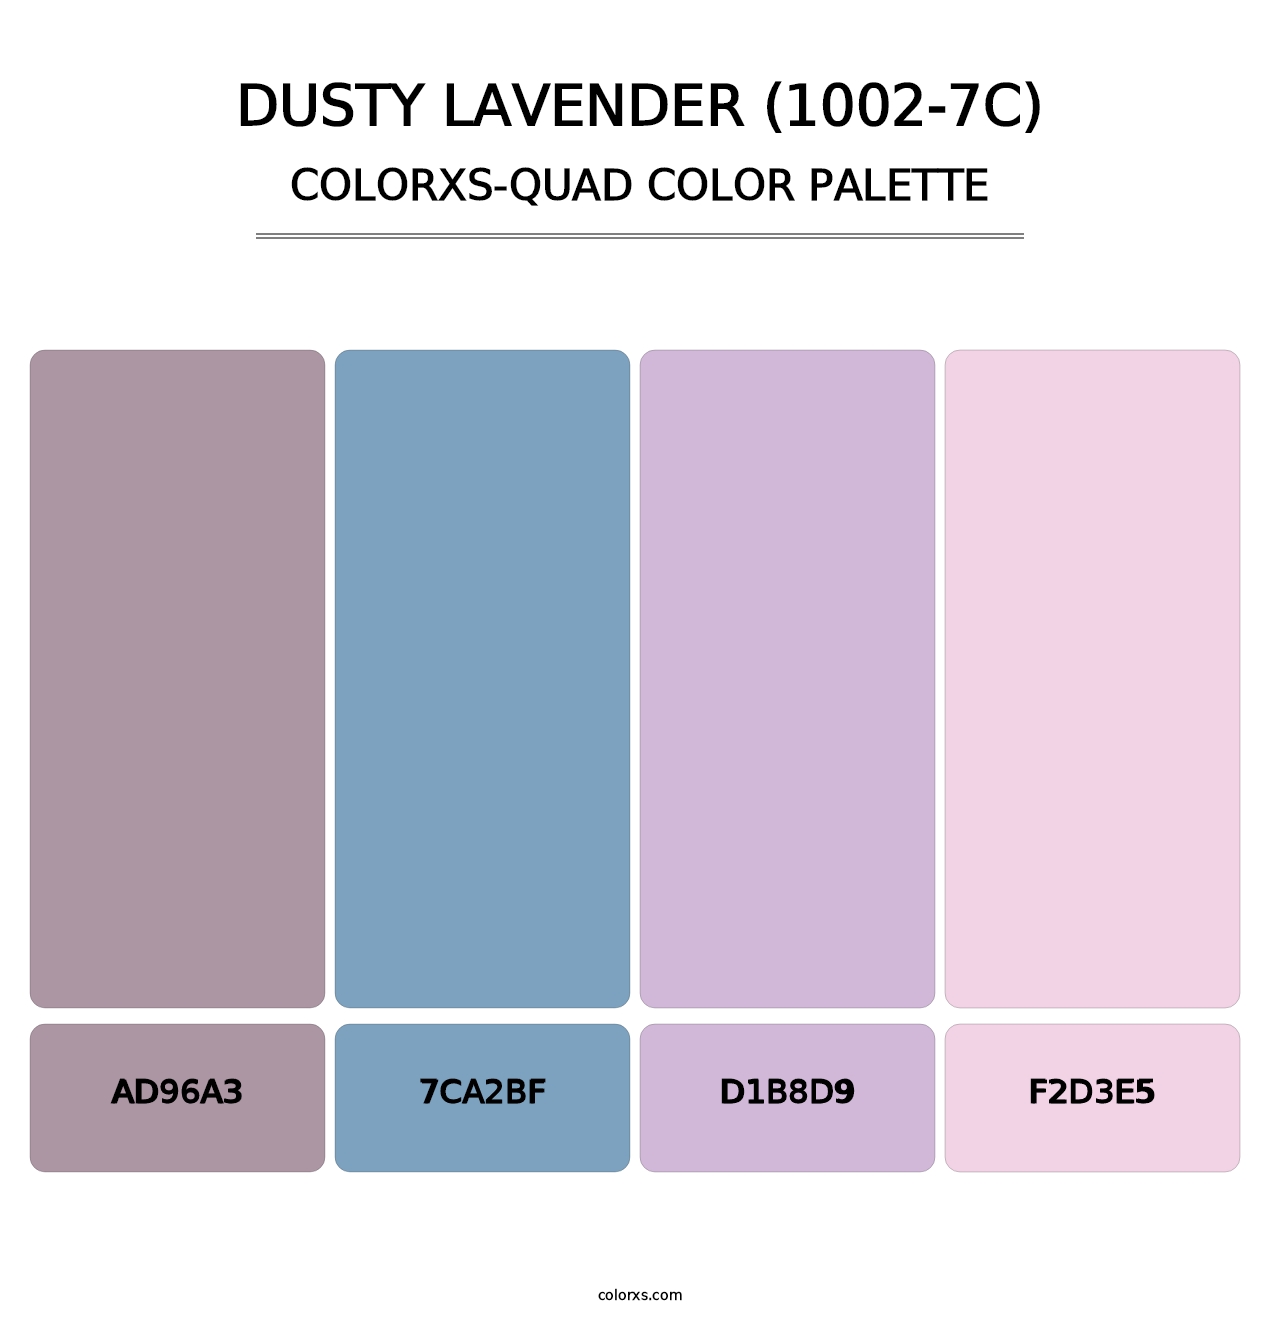 Dusty Lavender (1002-7C) - Colorxs Quad Palette